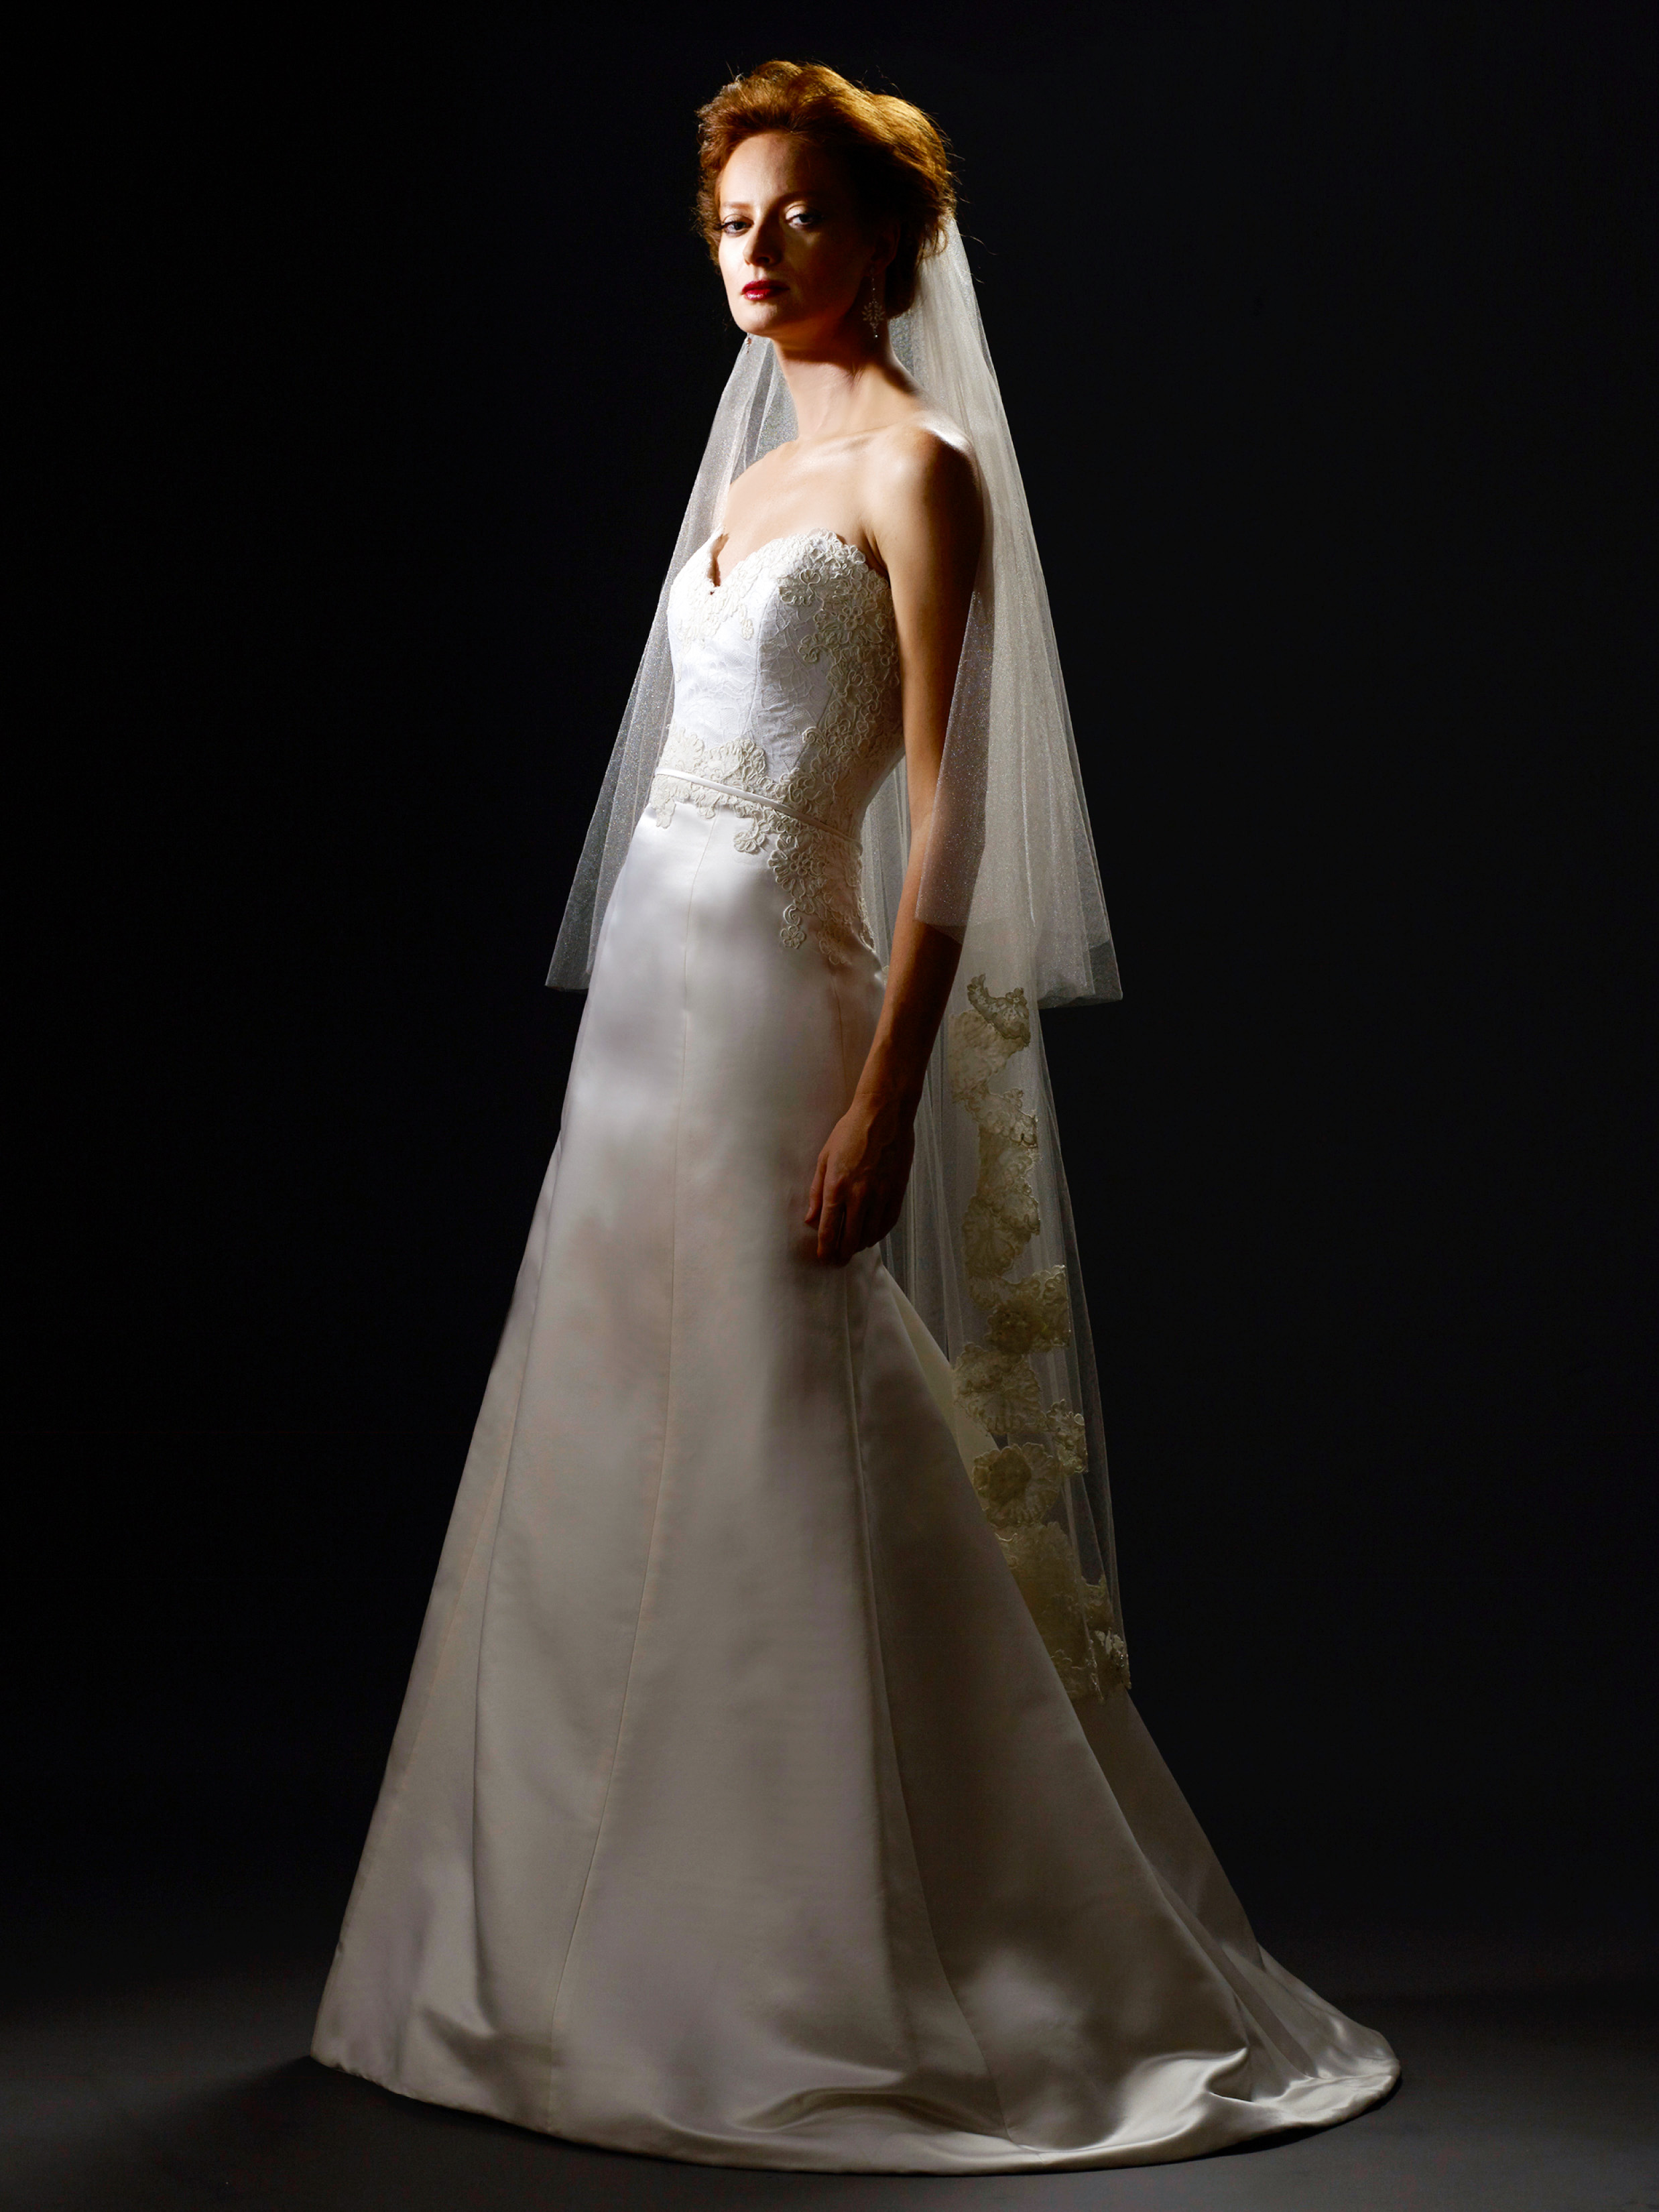 Steven Birnbaum Fall 2019 Wedding Dress Collection | Martha Stewart ...